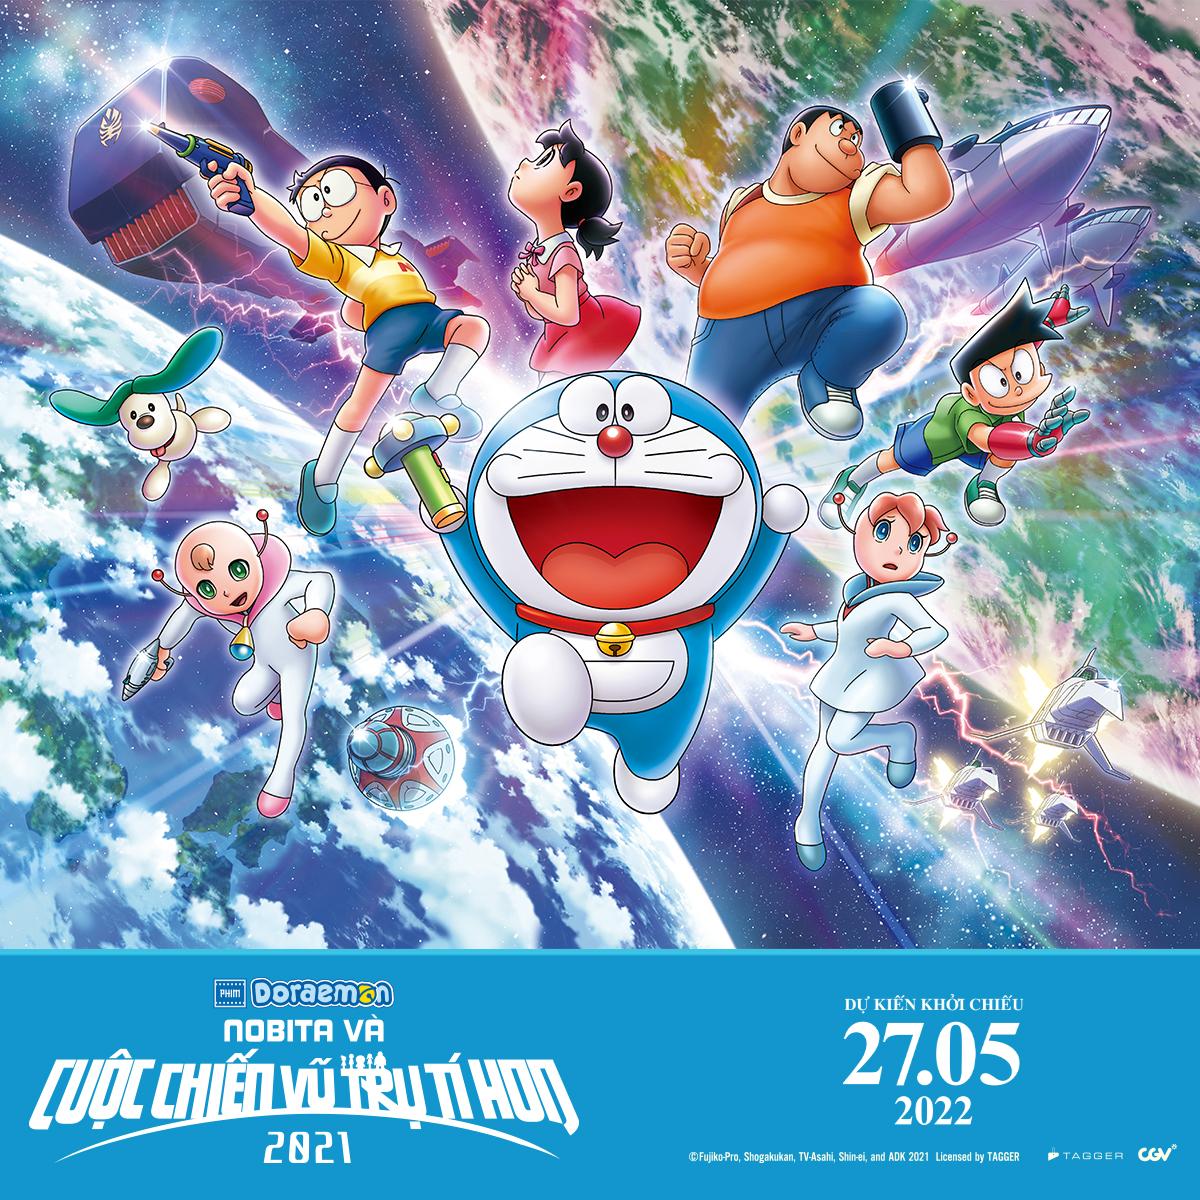 Thế giới Doraemon: Khám phá ngay thế giới bí ẩn của chú mèo máy Doremon. Với những trò chơi thú vị, những nhân vật đáng yêu và những câu chuyện hấp dẫn, thế giới Doraemon luôn là một điểm đến tuyệt vời cho trẻ em. Hãy cùng khám phá thế giới đầy phép thuật này!